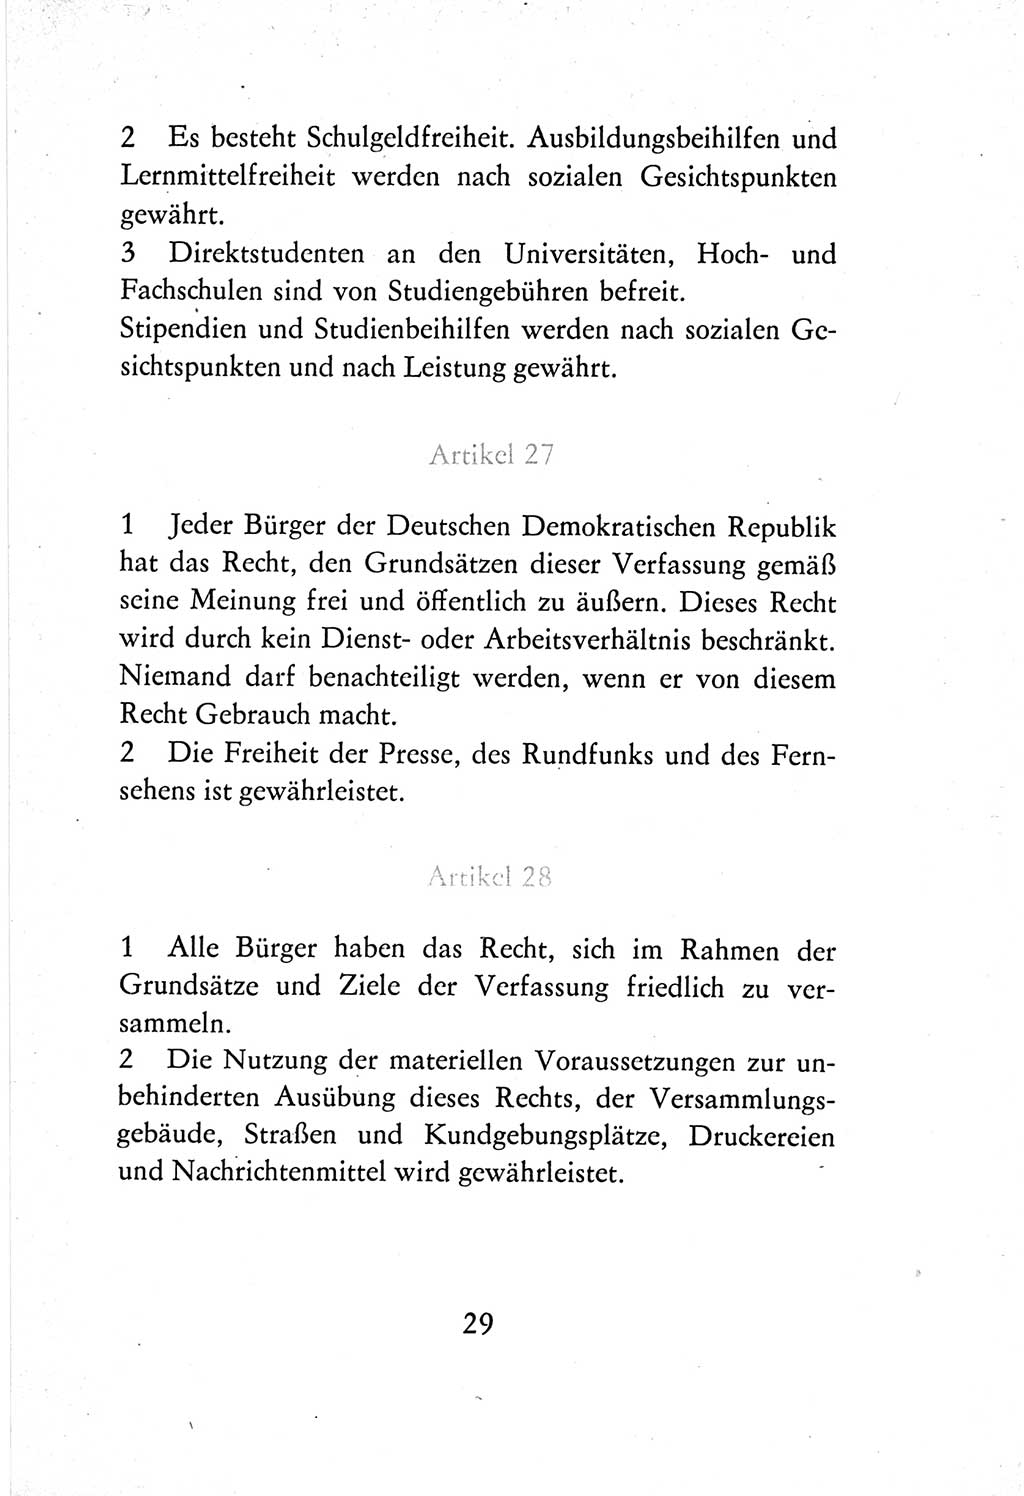 Verfassung der Deutschen Demokratischen Republik (DDR) vom 7. Oktober 1974, Seite 29 (Verf. DDR 1974, S. 29)